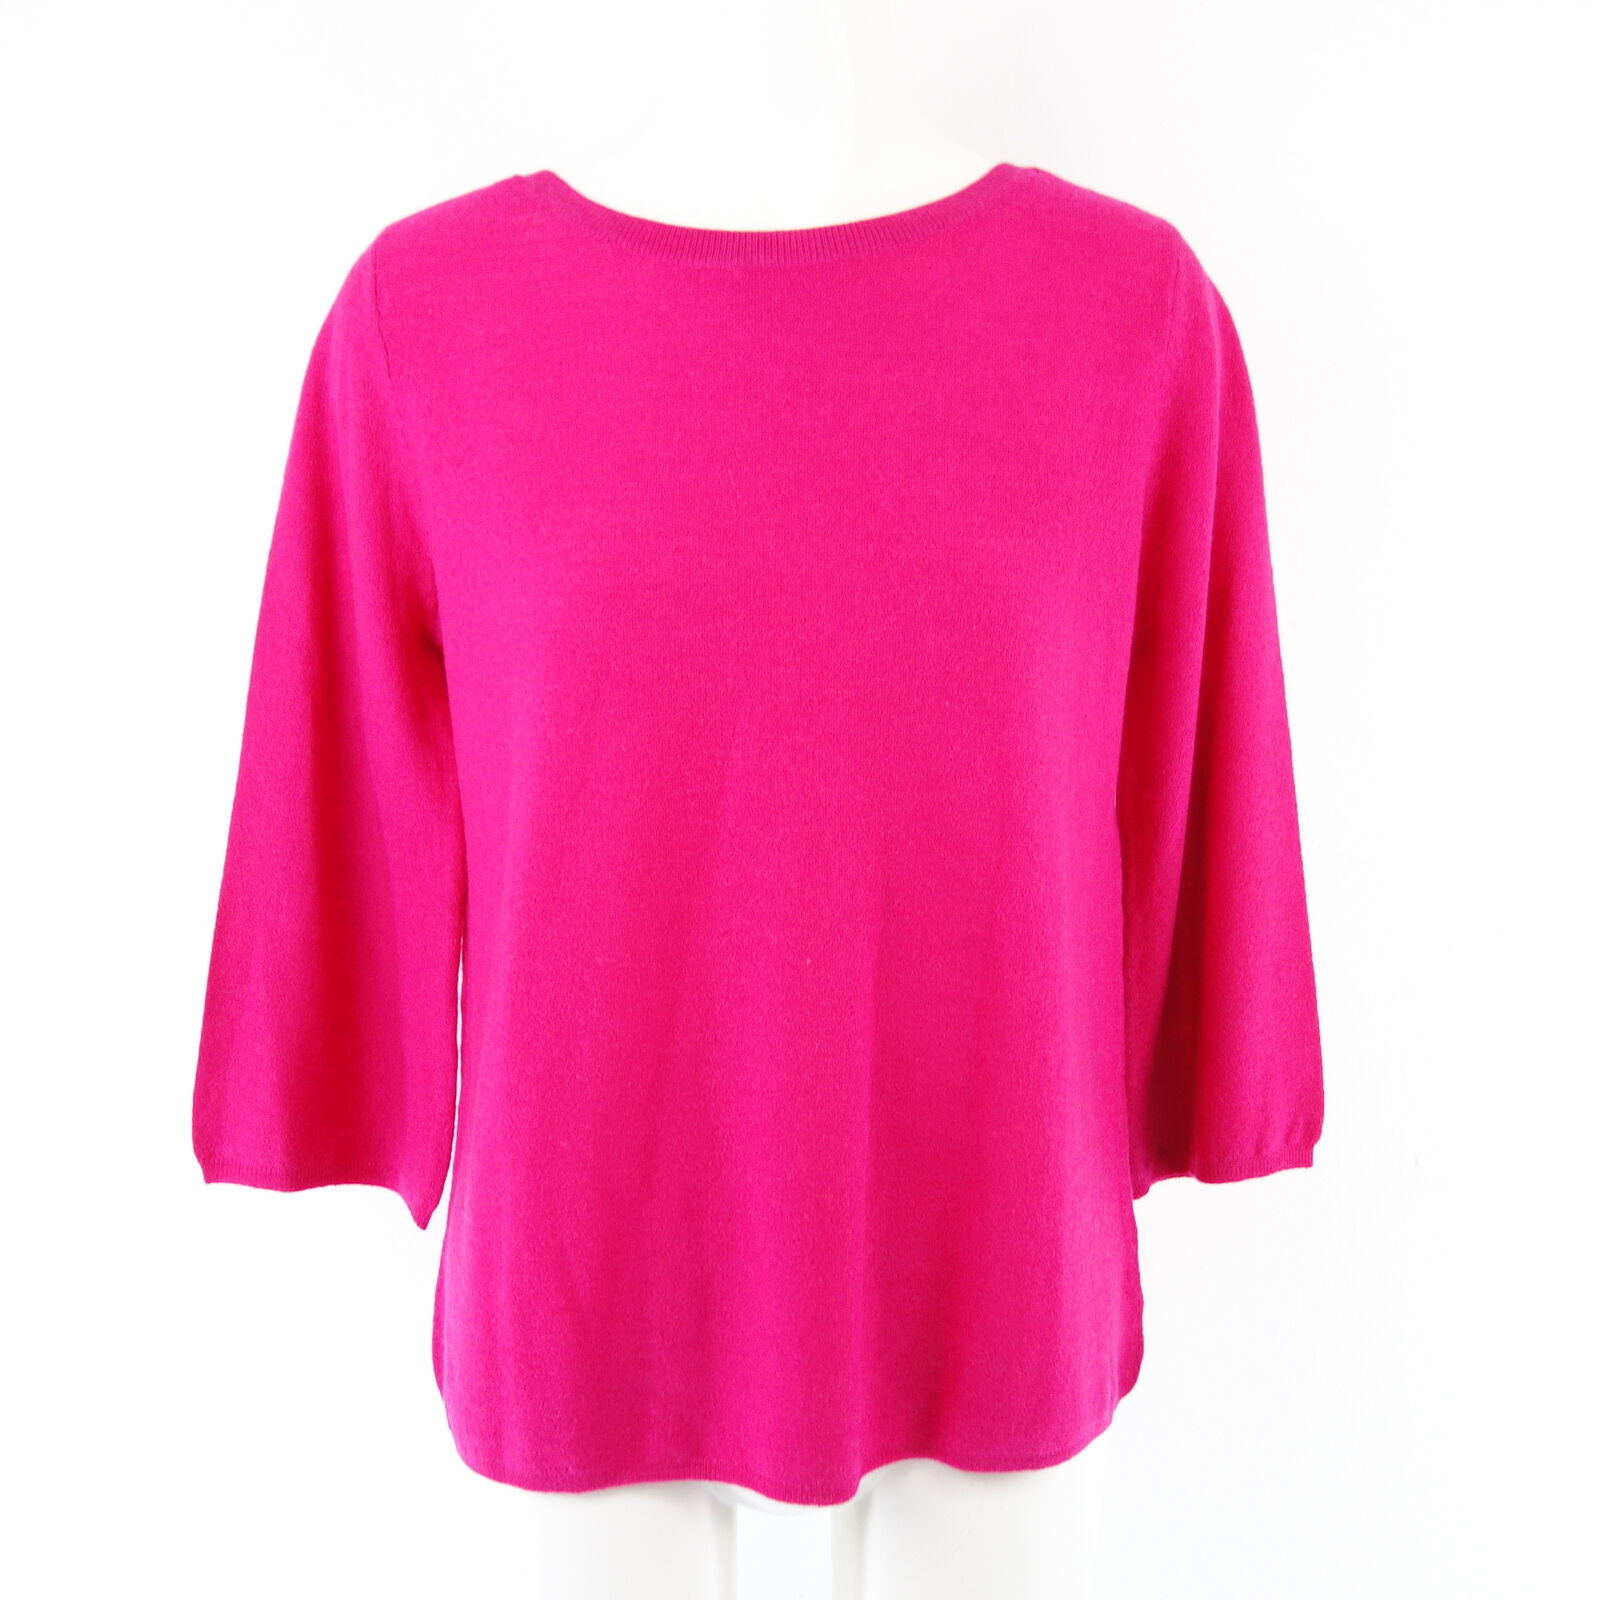 HMK Damen Pullover Modell Ennie Größe 36 Pink 100% Wolle Schurwolle Strick 